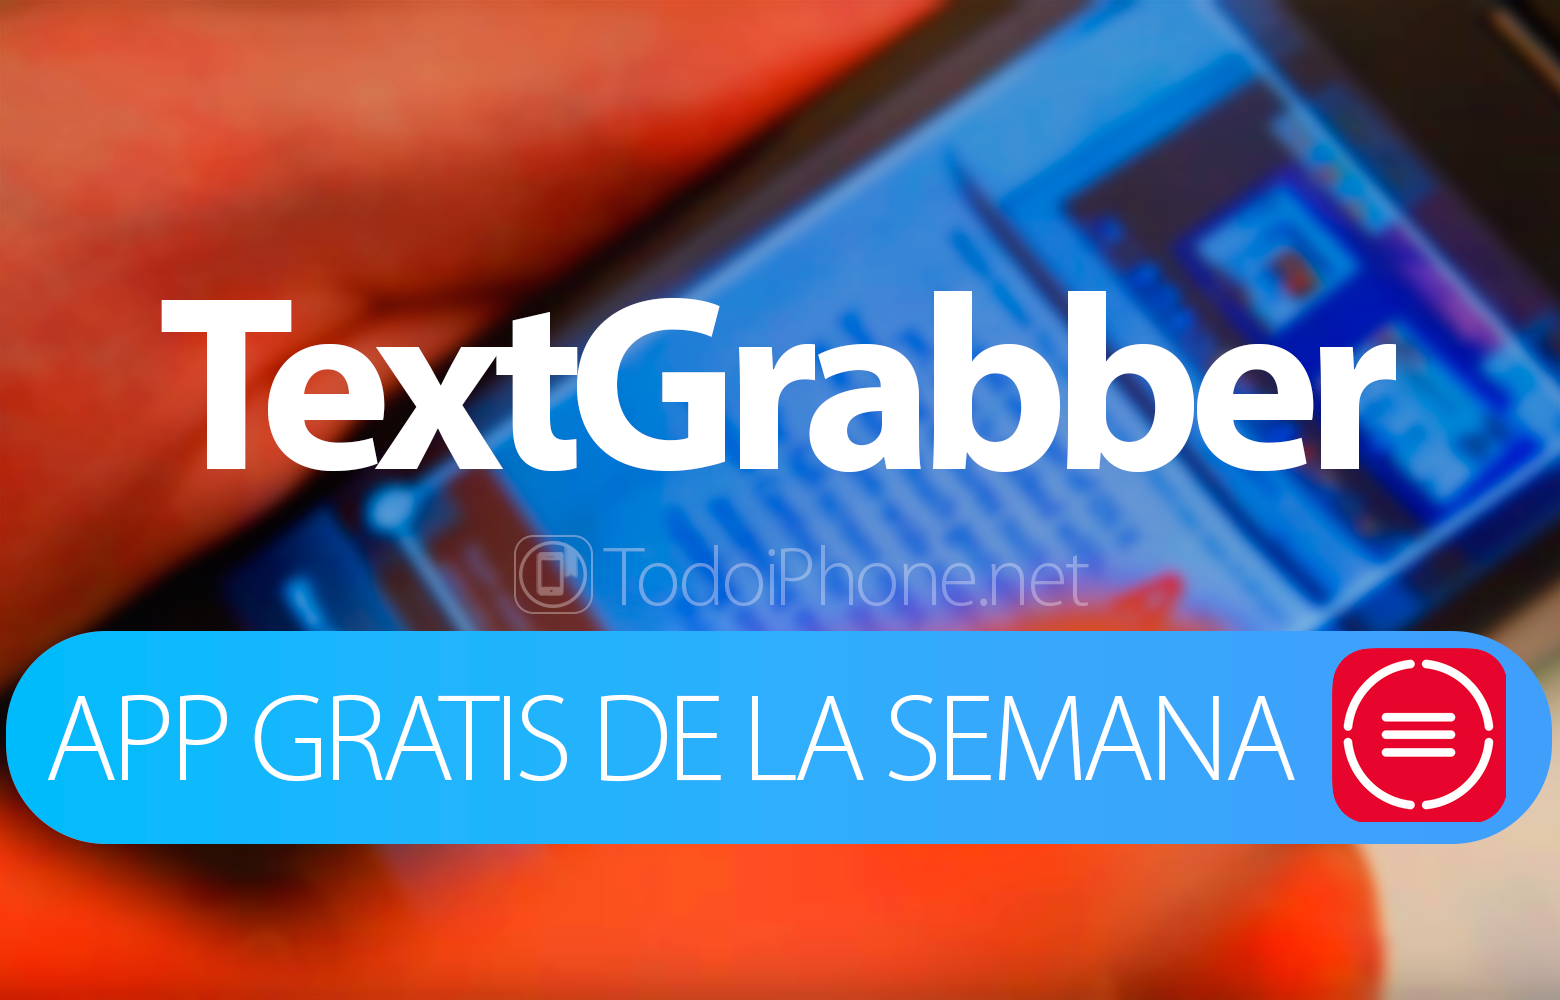 TextGrabber - Den här veckans applikation på iTunes 2